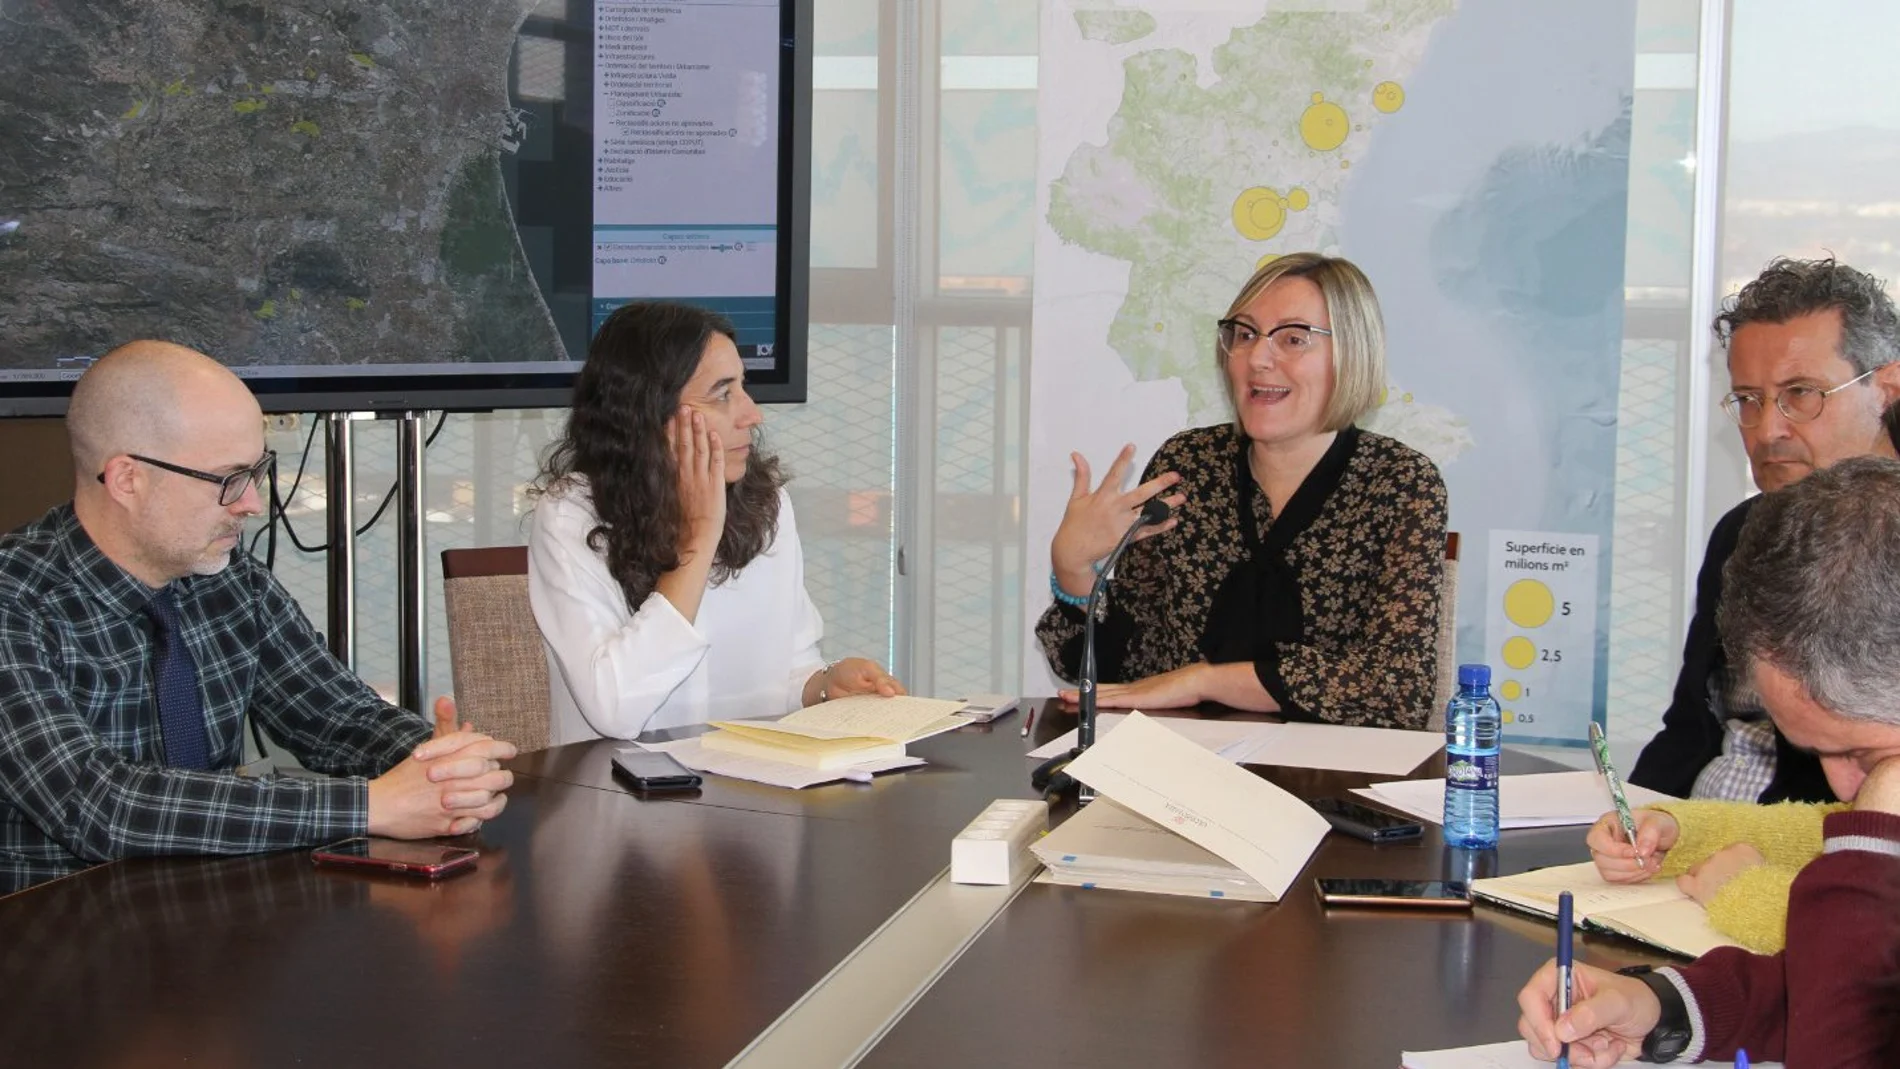 La consellera de Vivienda, María José Salvador, presentó ayer el visor cartográfico por el que se puede acceder a los proyectos urbanísticos rechazados